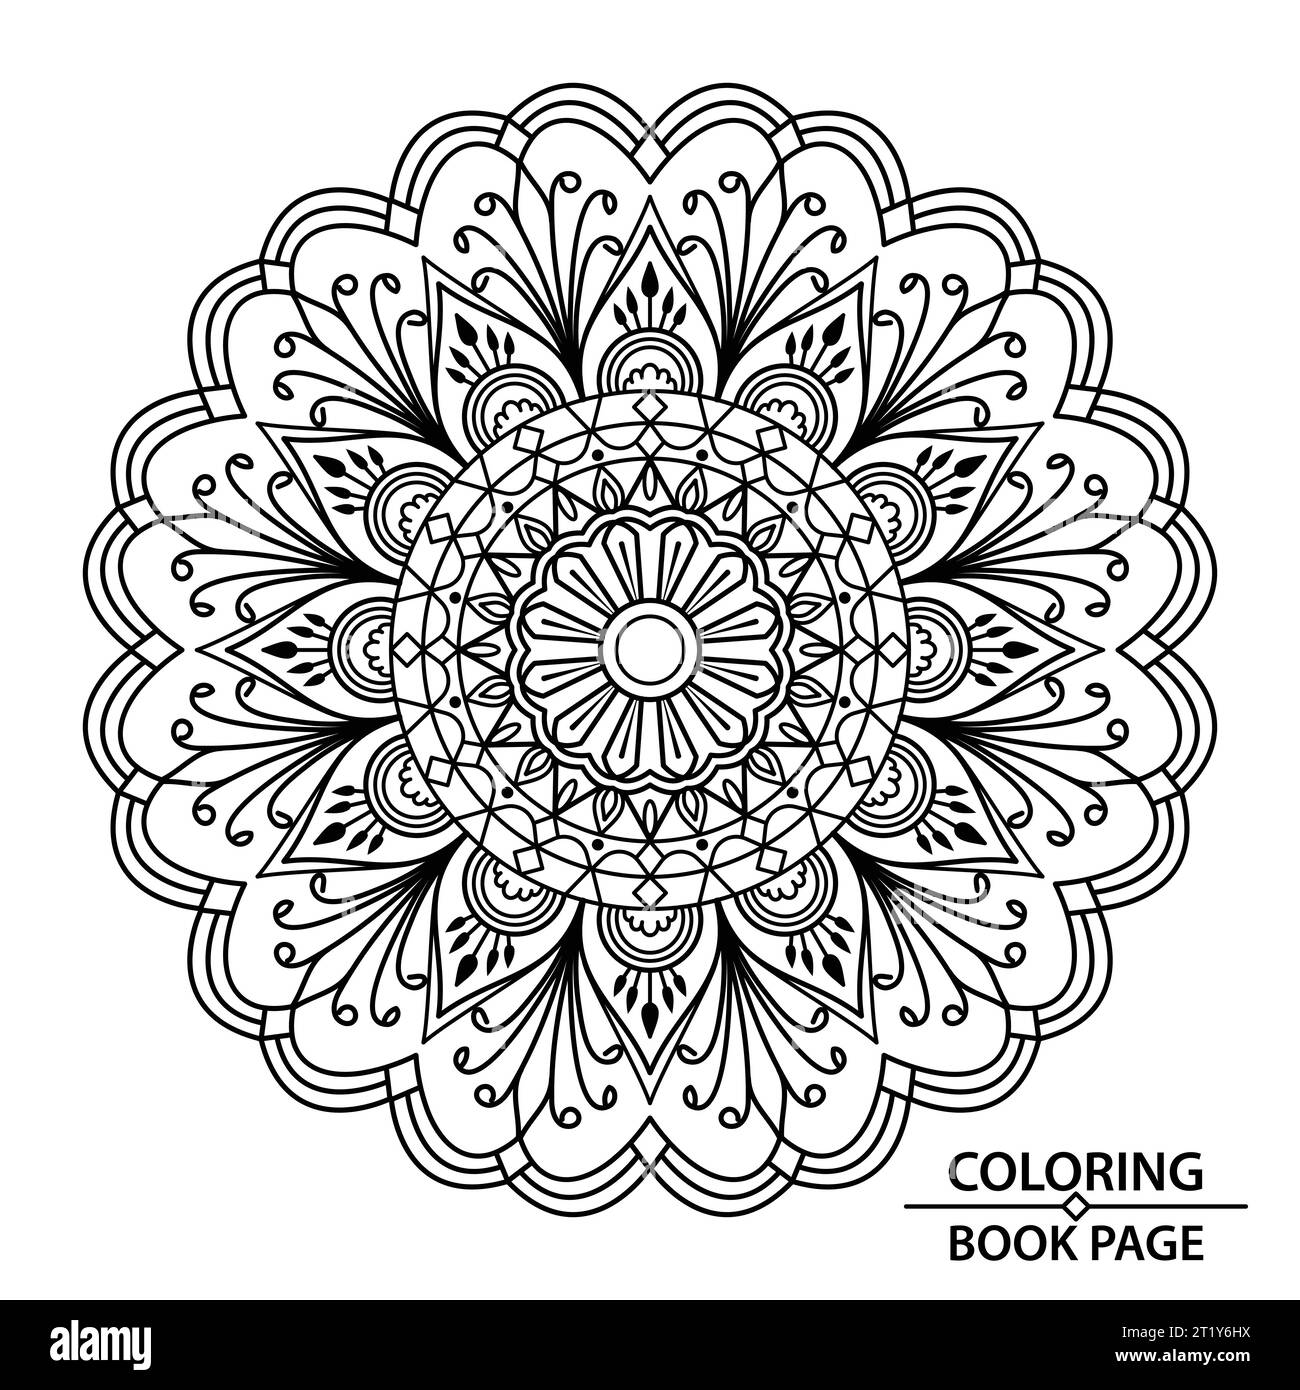 Artistico, Mandala per colorare la pagina del libro. Afferra subito queste semplici pagine da colorare con mandala e goditi alcuni minuti di relax senza interruzioni Illustrazione Vettoriale